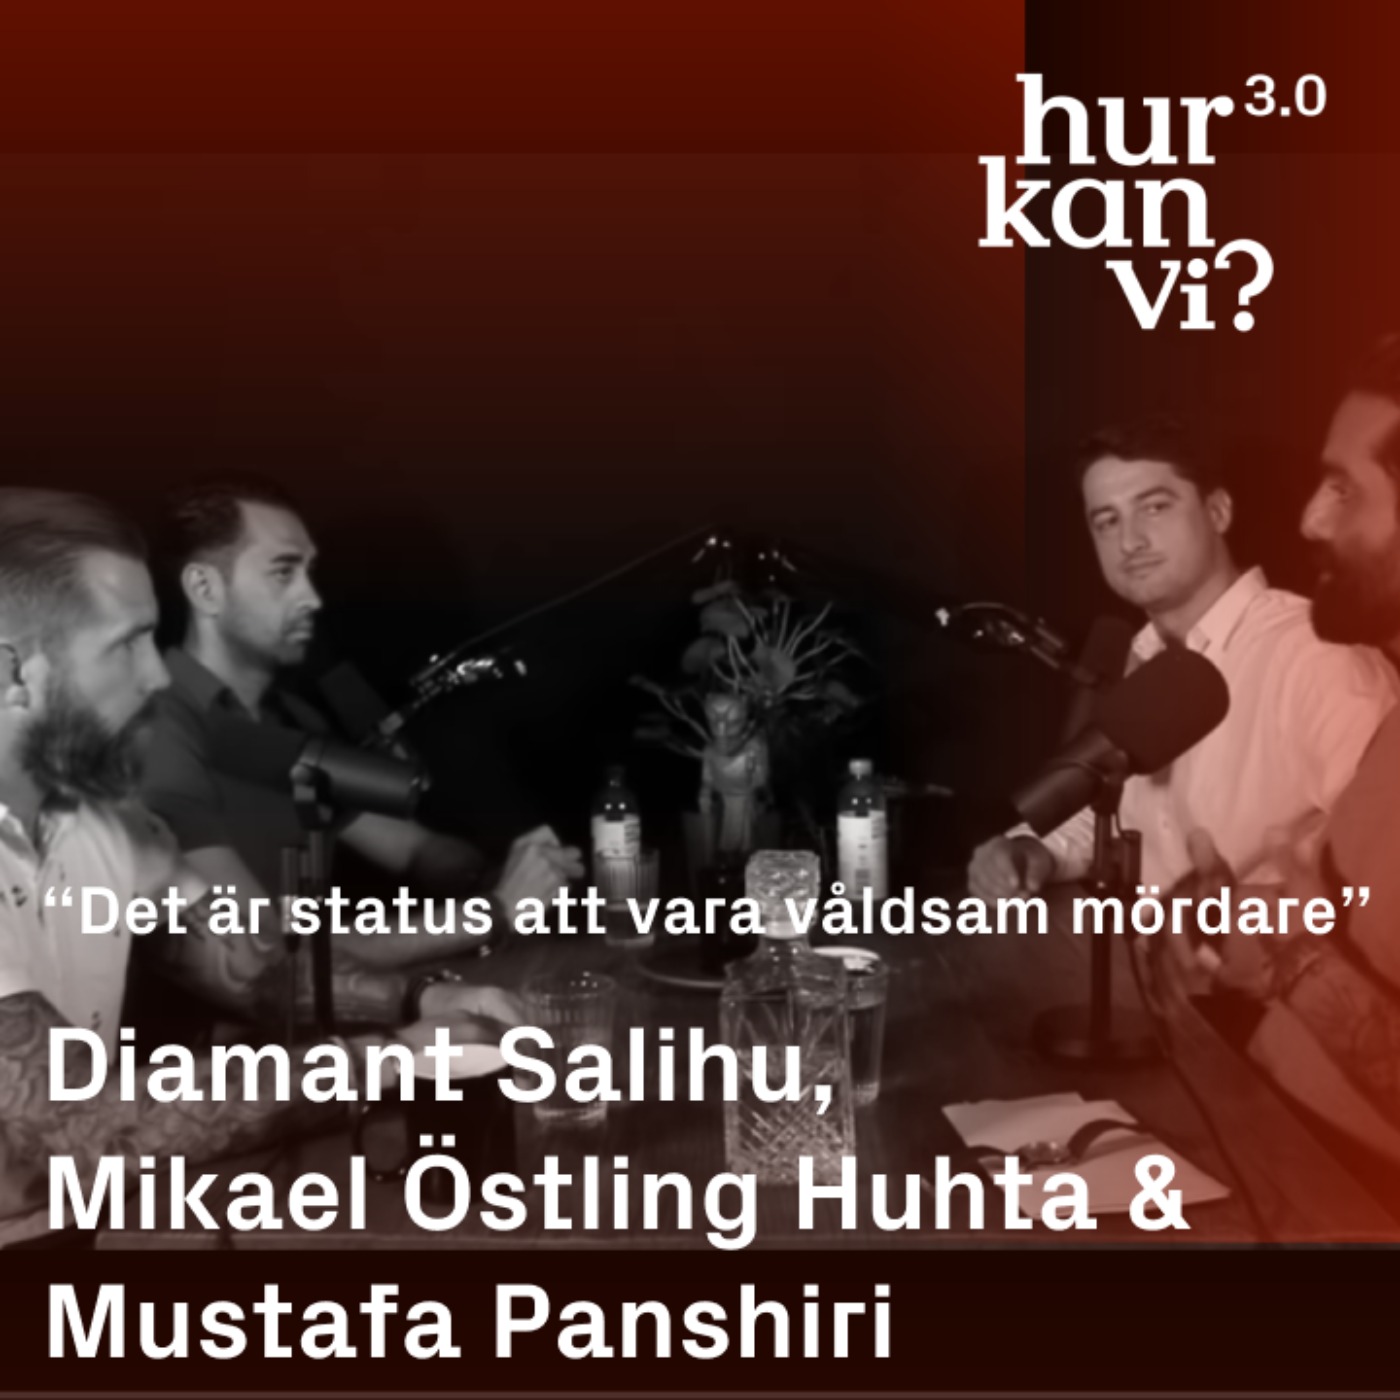 Diamant Salihu, Mikael Östling Huhta, Mustafa Panshiri - “Det är status att vara våldsam mördare”